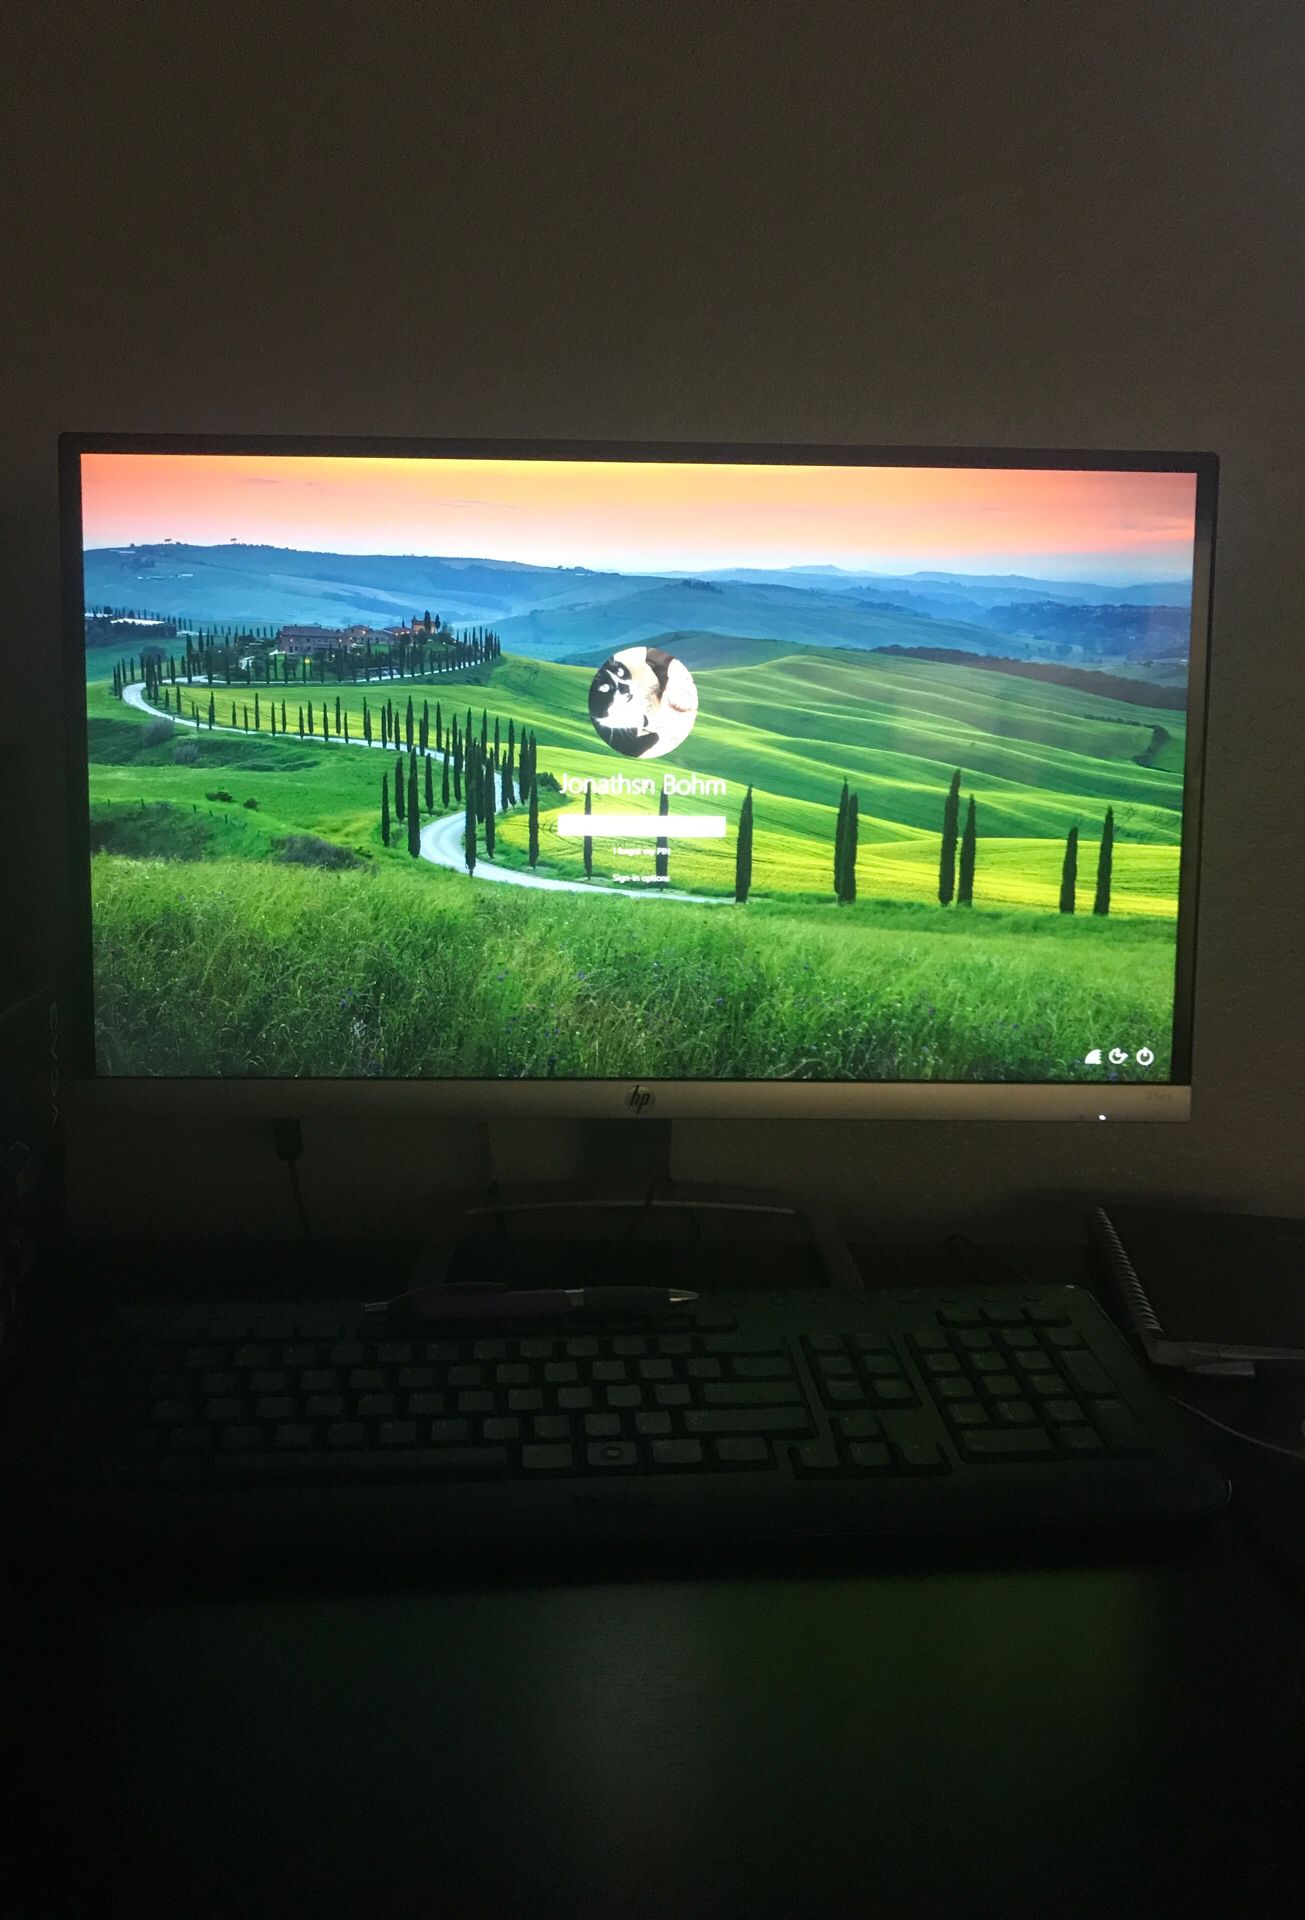 Hp computer monitor